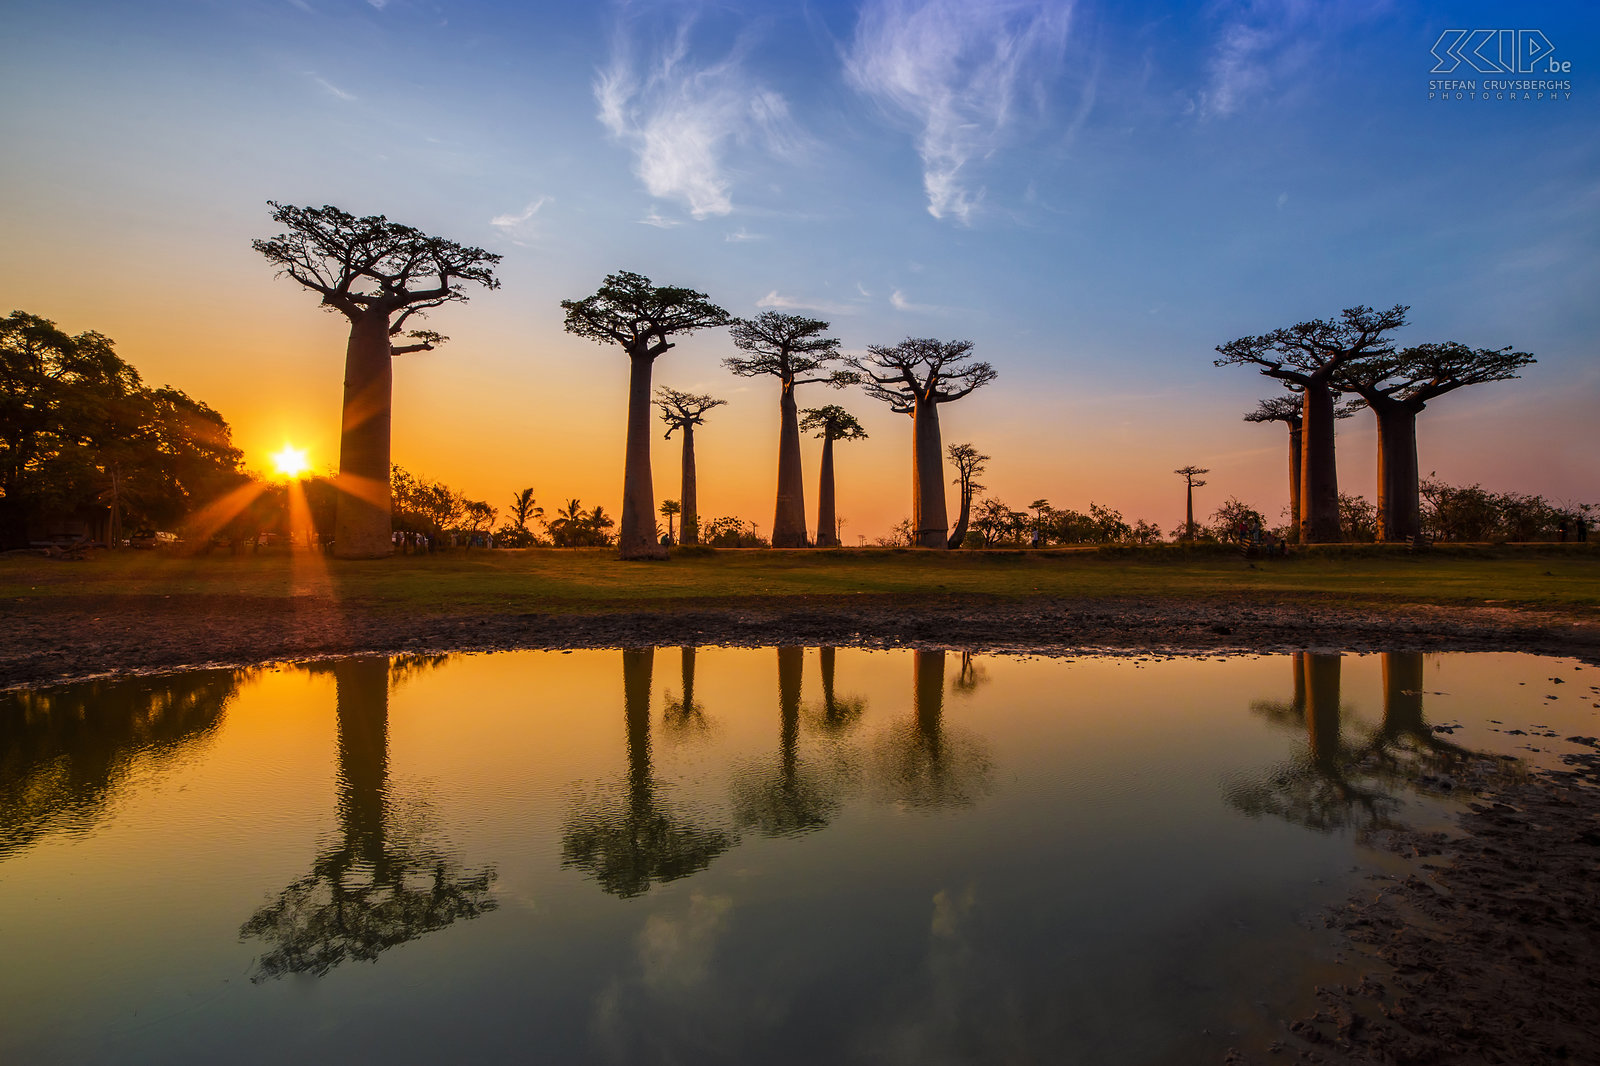 Zonsondergang aan de Baobablaan De ‘Baobab-laan’/'Avenue of Baobabs'/'Alley of baobabs'/'Allée des Baobabs' is één van de iconische plaatsen in Madagaskar. In het gebied tussen Morondava en Belon'i Tsiribihina in het westen van Madagaskar staan honderden indrukwekkende baobabs. Deze ‘laan’ is een prominente groep van 25 baobab bomen langs een onverharde weg. Baobabs zijn afkomstig uit Madagaskar. Zes van de acht bekende soorten zijn endemisch en de baobabs op de laan zijn 'Adansonia grandidieri', de hoogste baobab soorten. Deze bomen zijn 30 meter hoog en er wordt geschat dat ze meer dan 800 jaar oud zijn. Stefan Cruysberghs